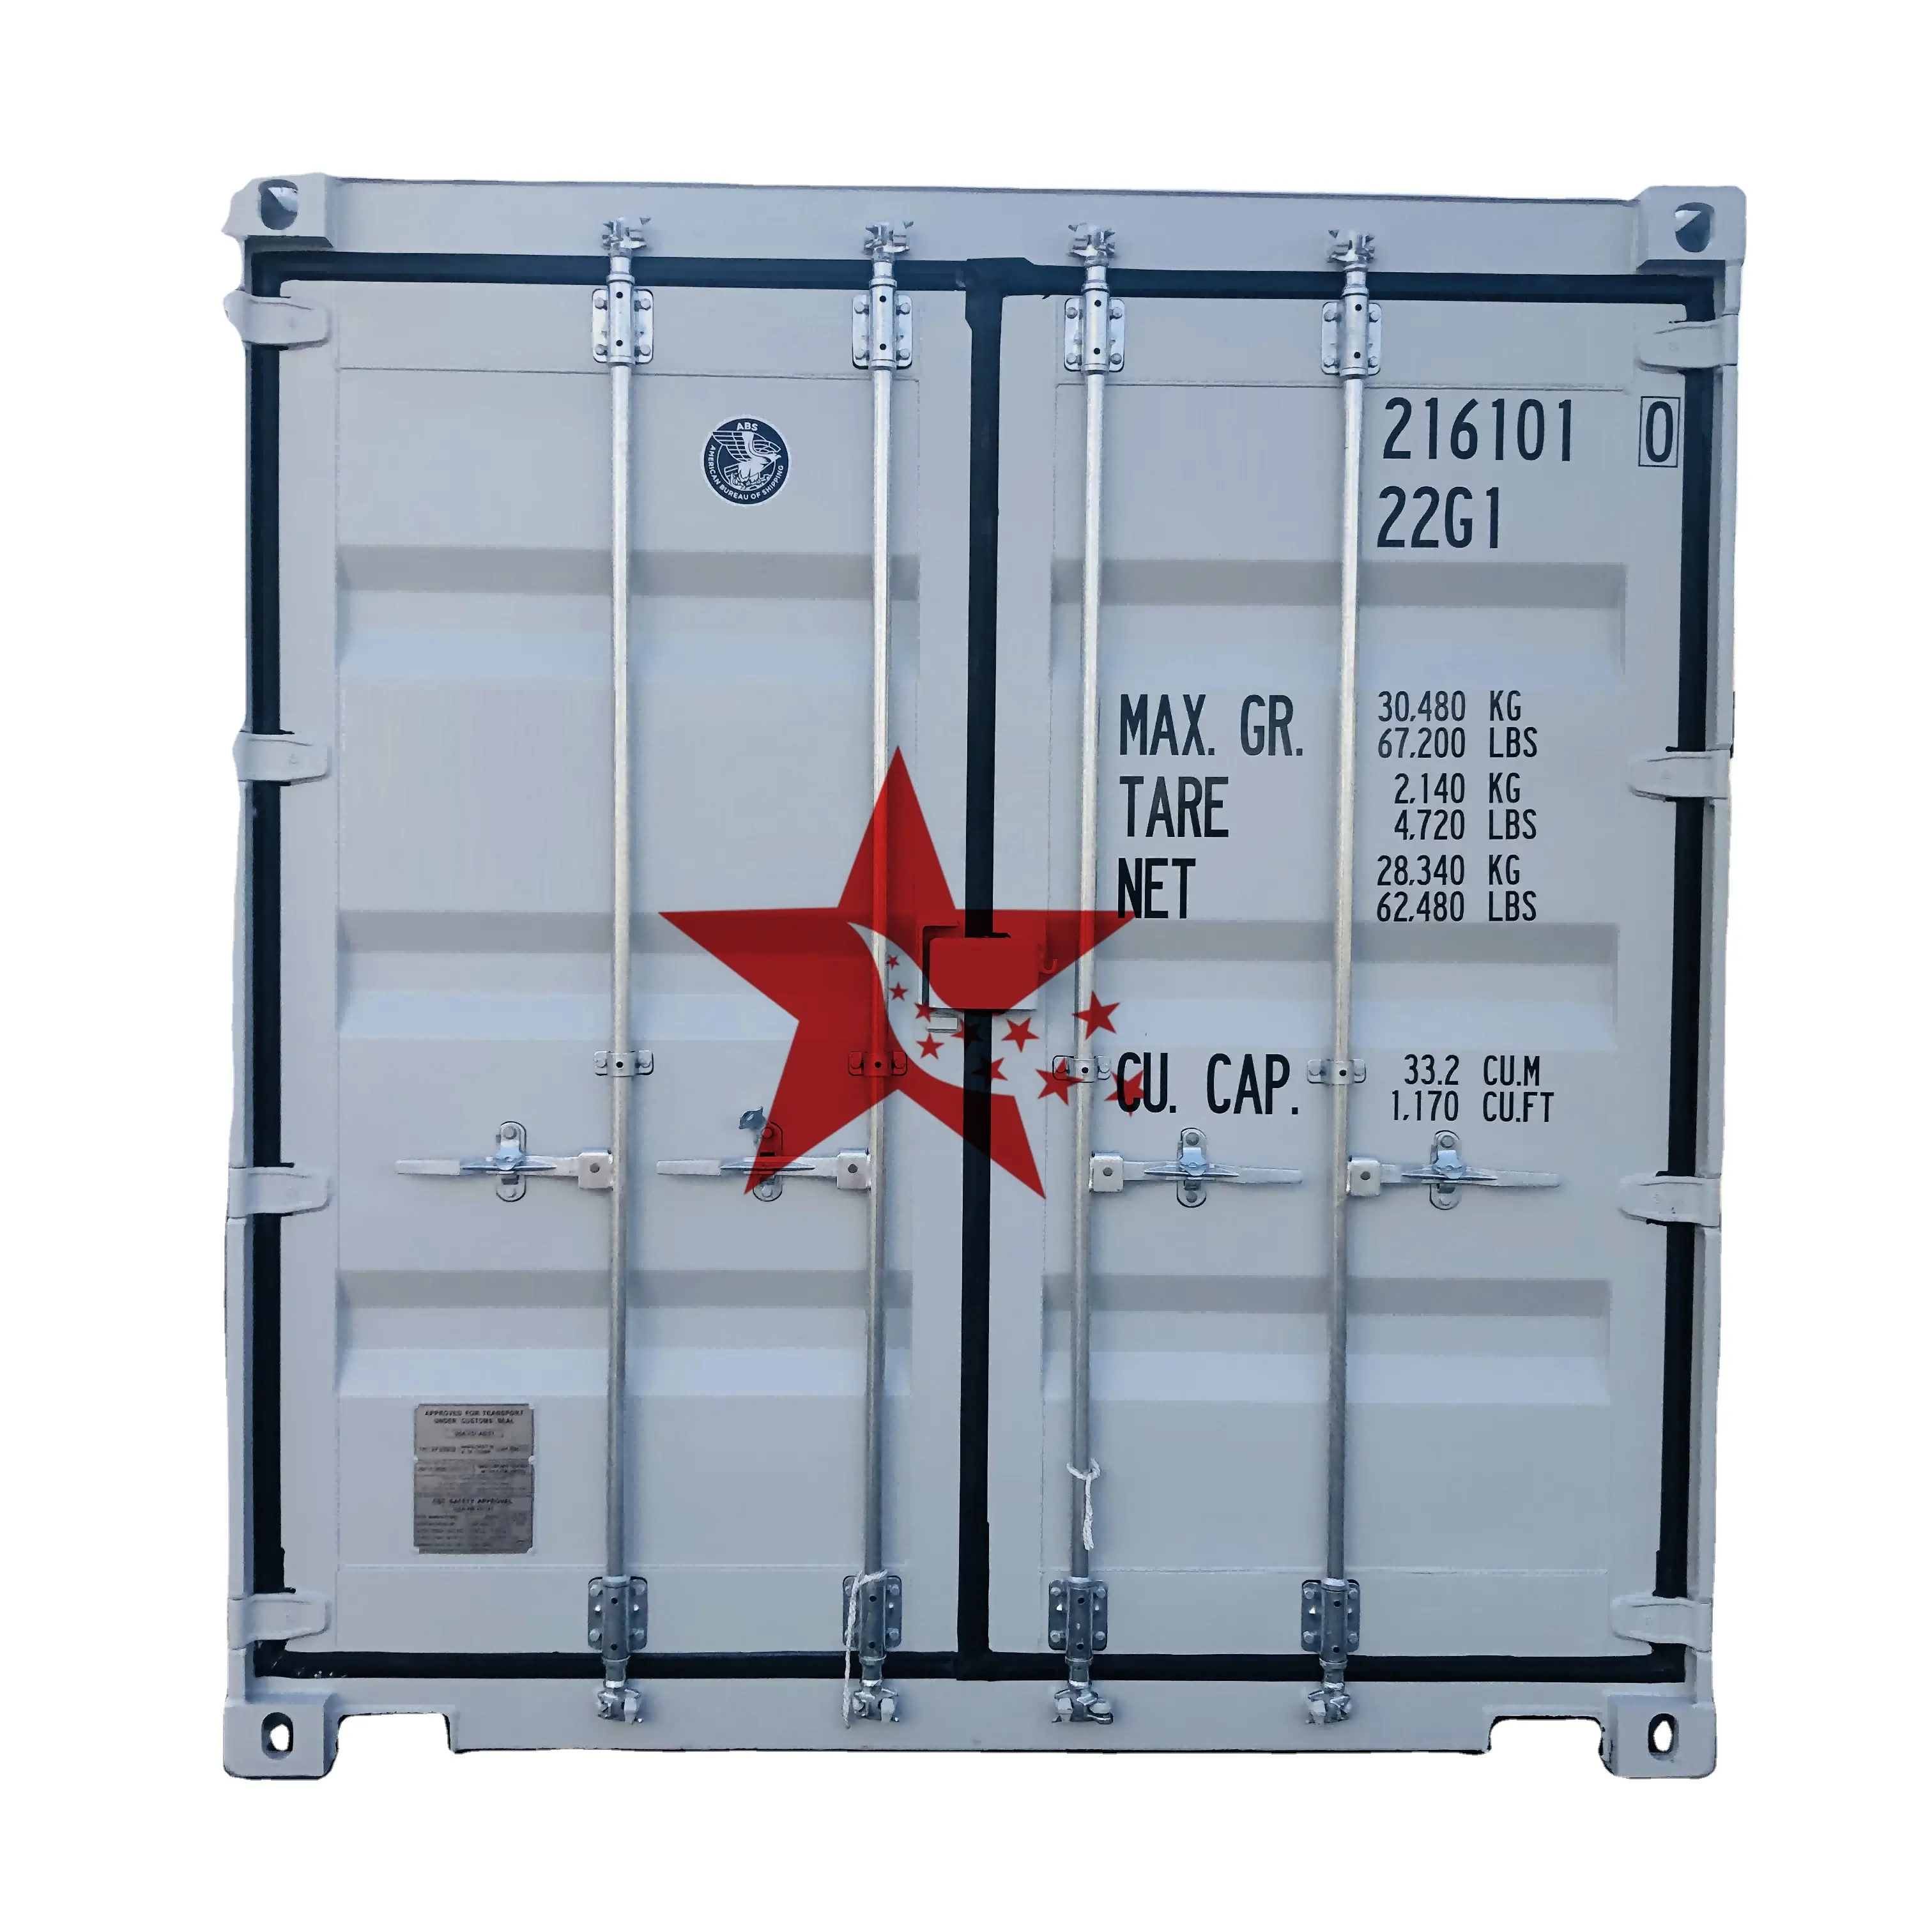 Novo contêiner de carga seca padrão ISO de 20 pés para venda na China, EUA, Canadá